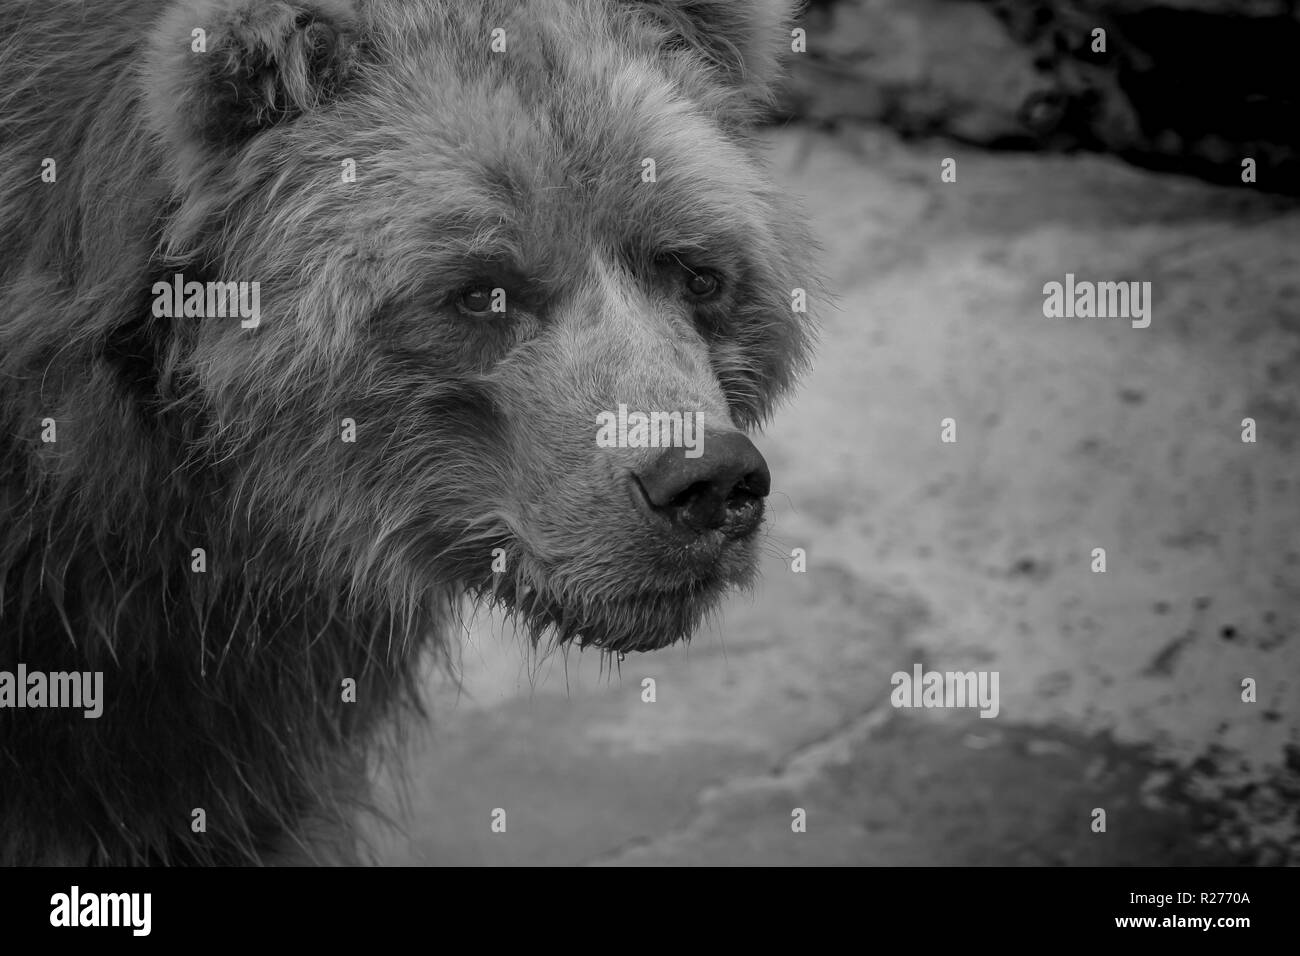 Ritratto di orso bruno close-up. Foto Stock